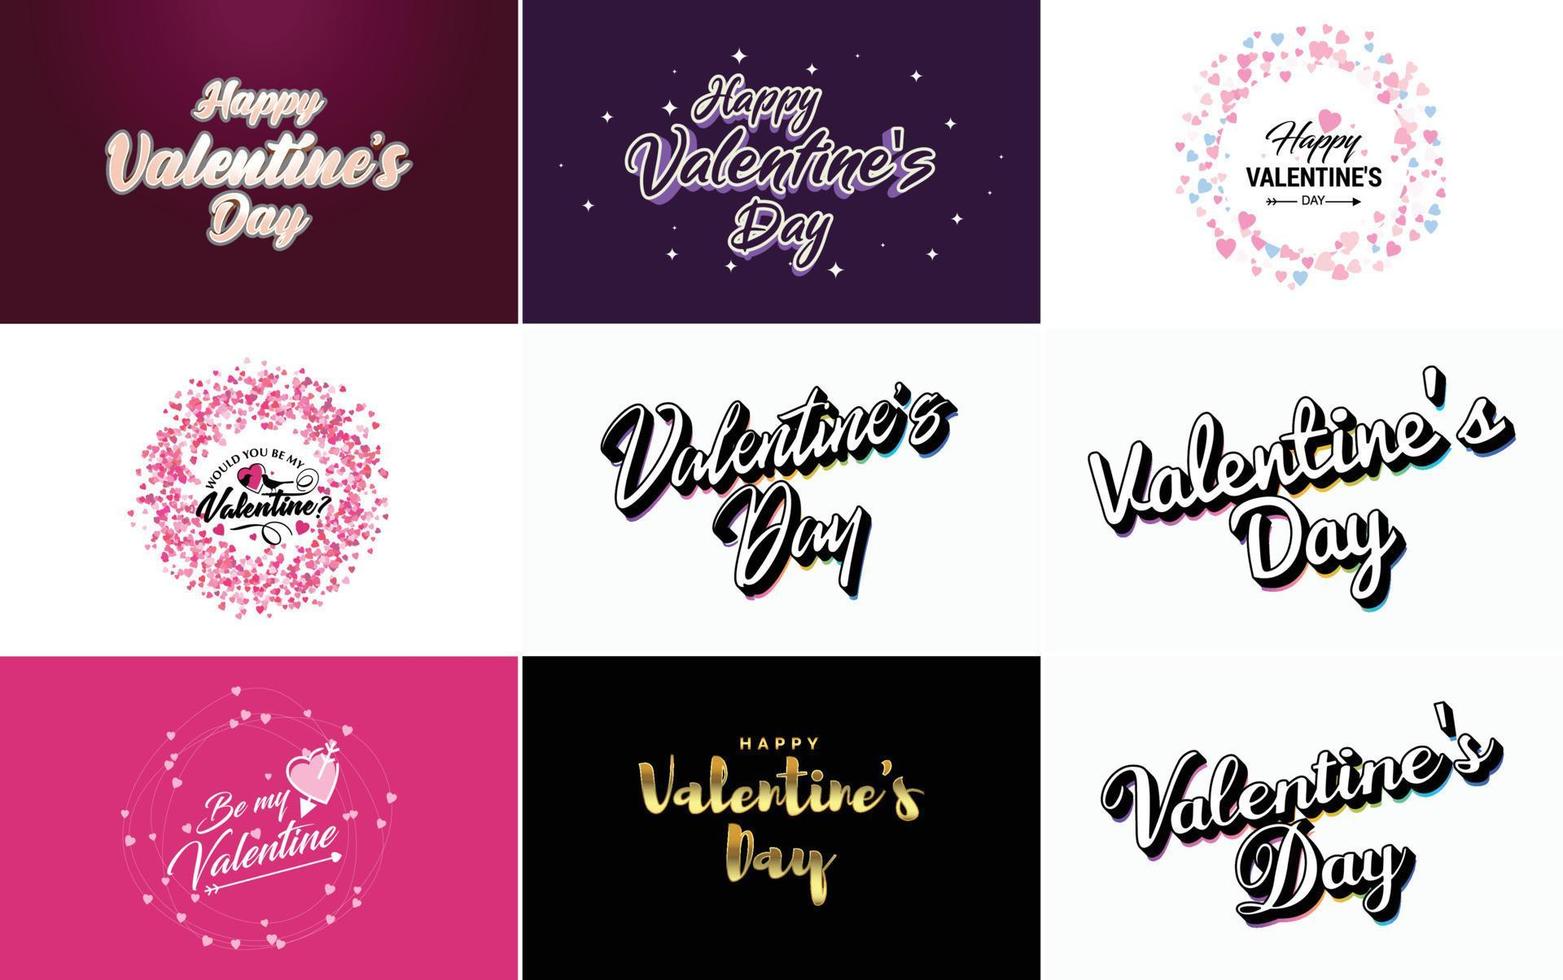 Fröhliches Valentinstag-Typografie-Design mit einer Aquarellstruktur und einem herzförmigen Kranz vektor